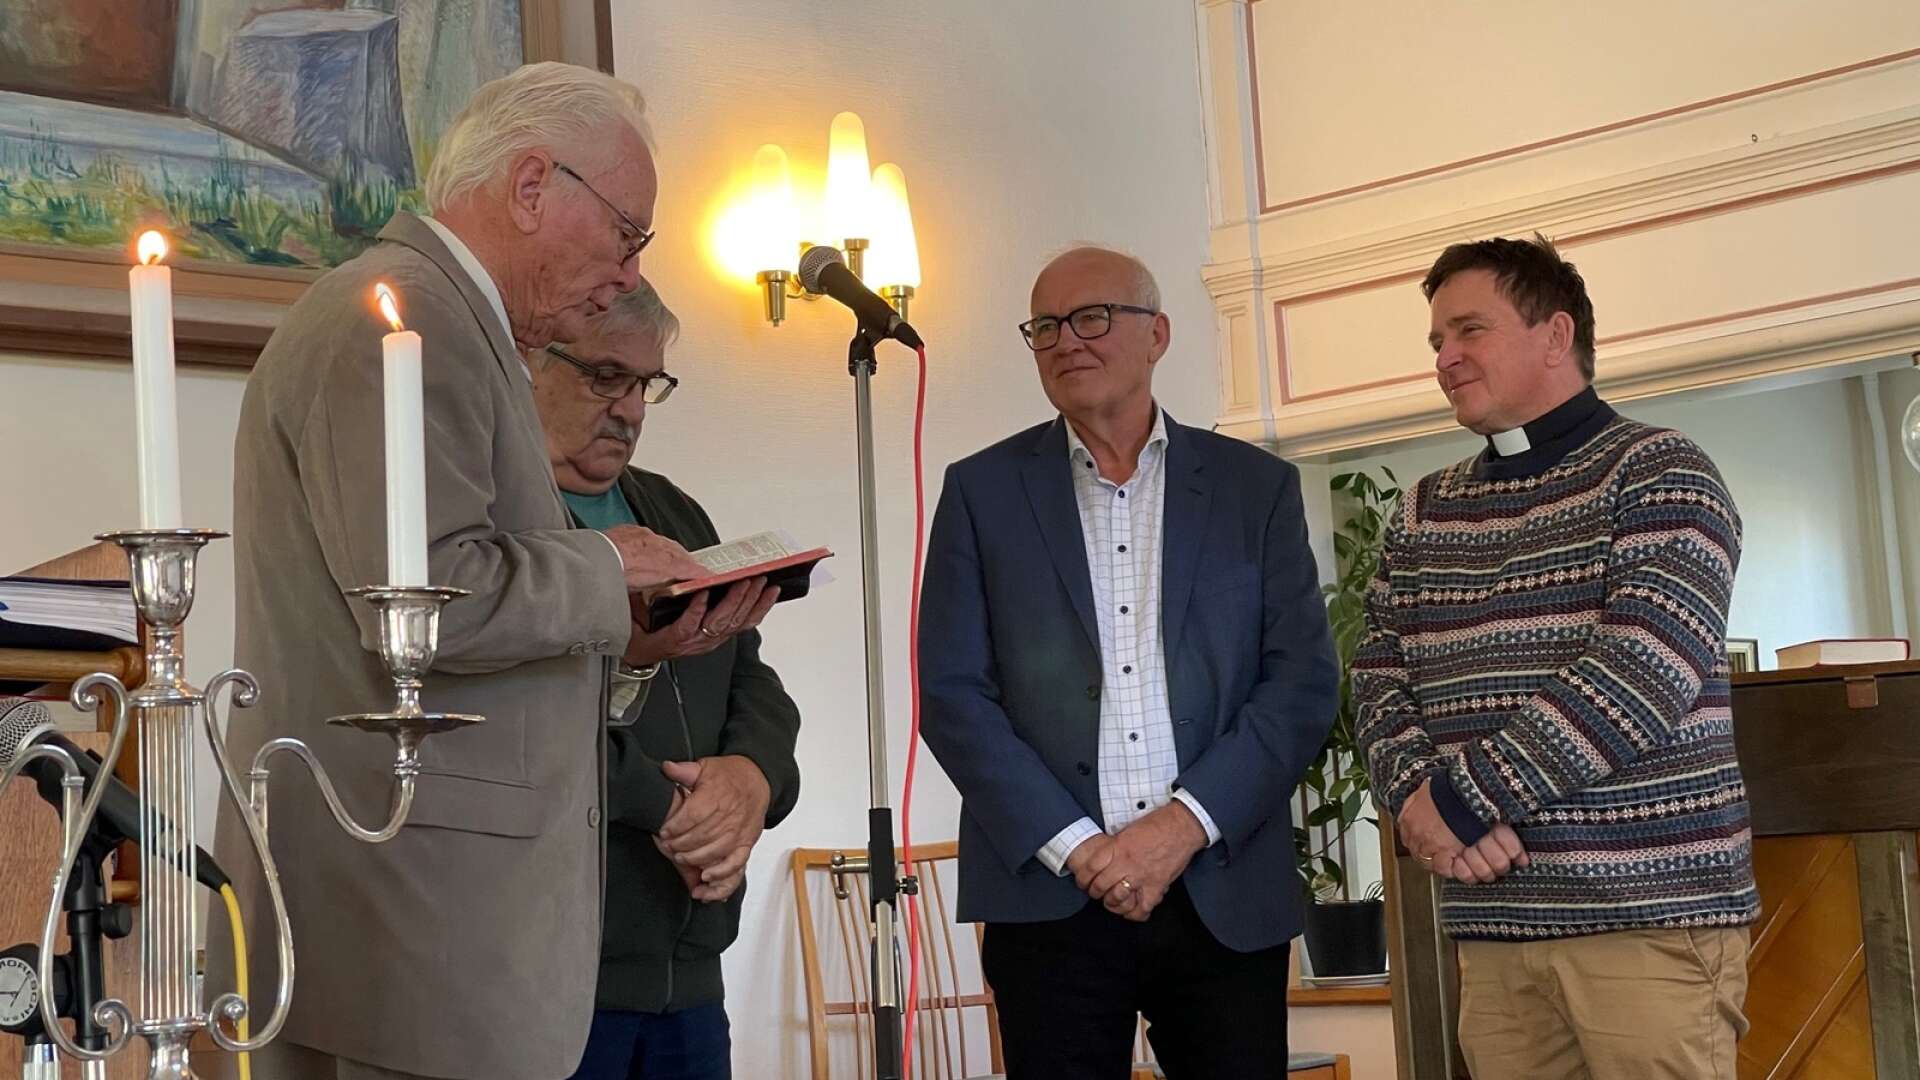 Församlingen med Roger Eriksson, Roger Holmgren och Per-Olov Backman hälsade pastor Anders Sunnergren välkommen.
